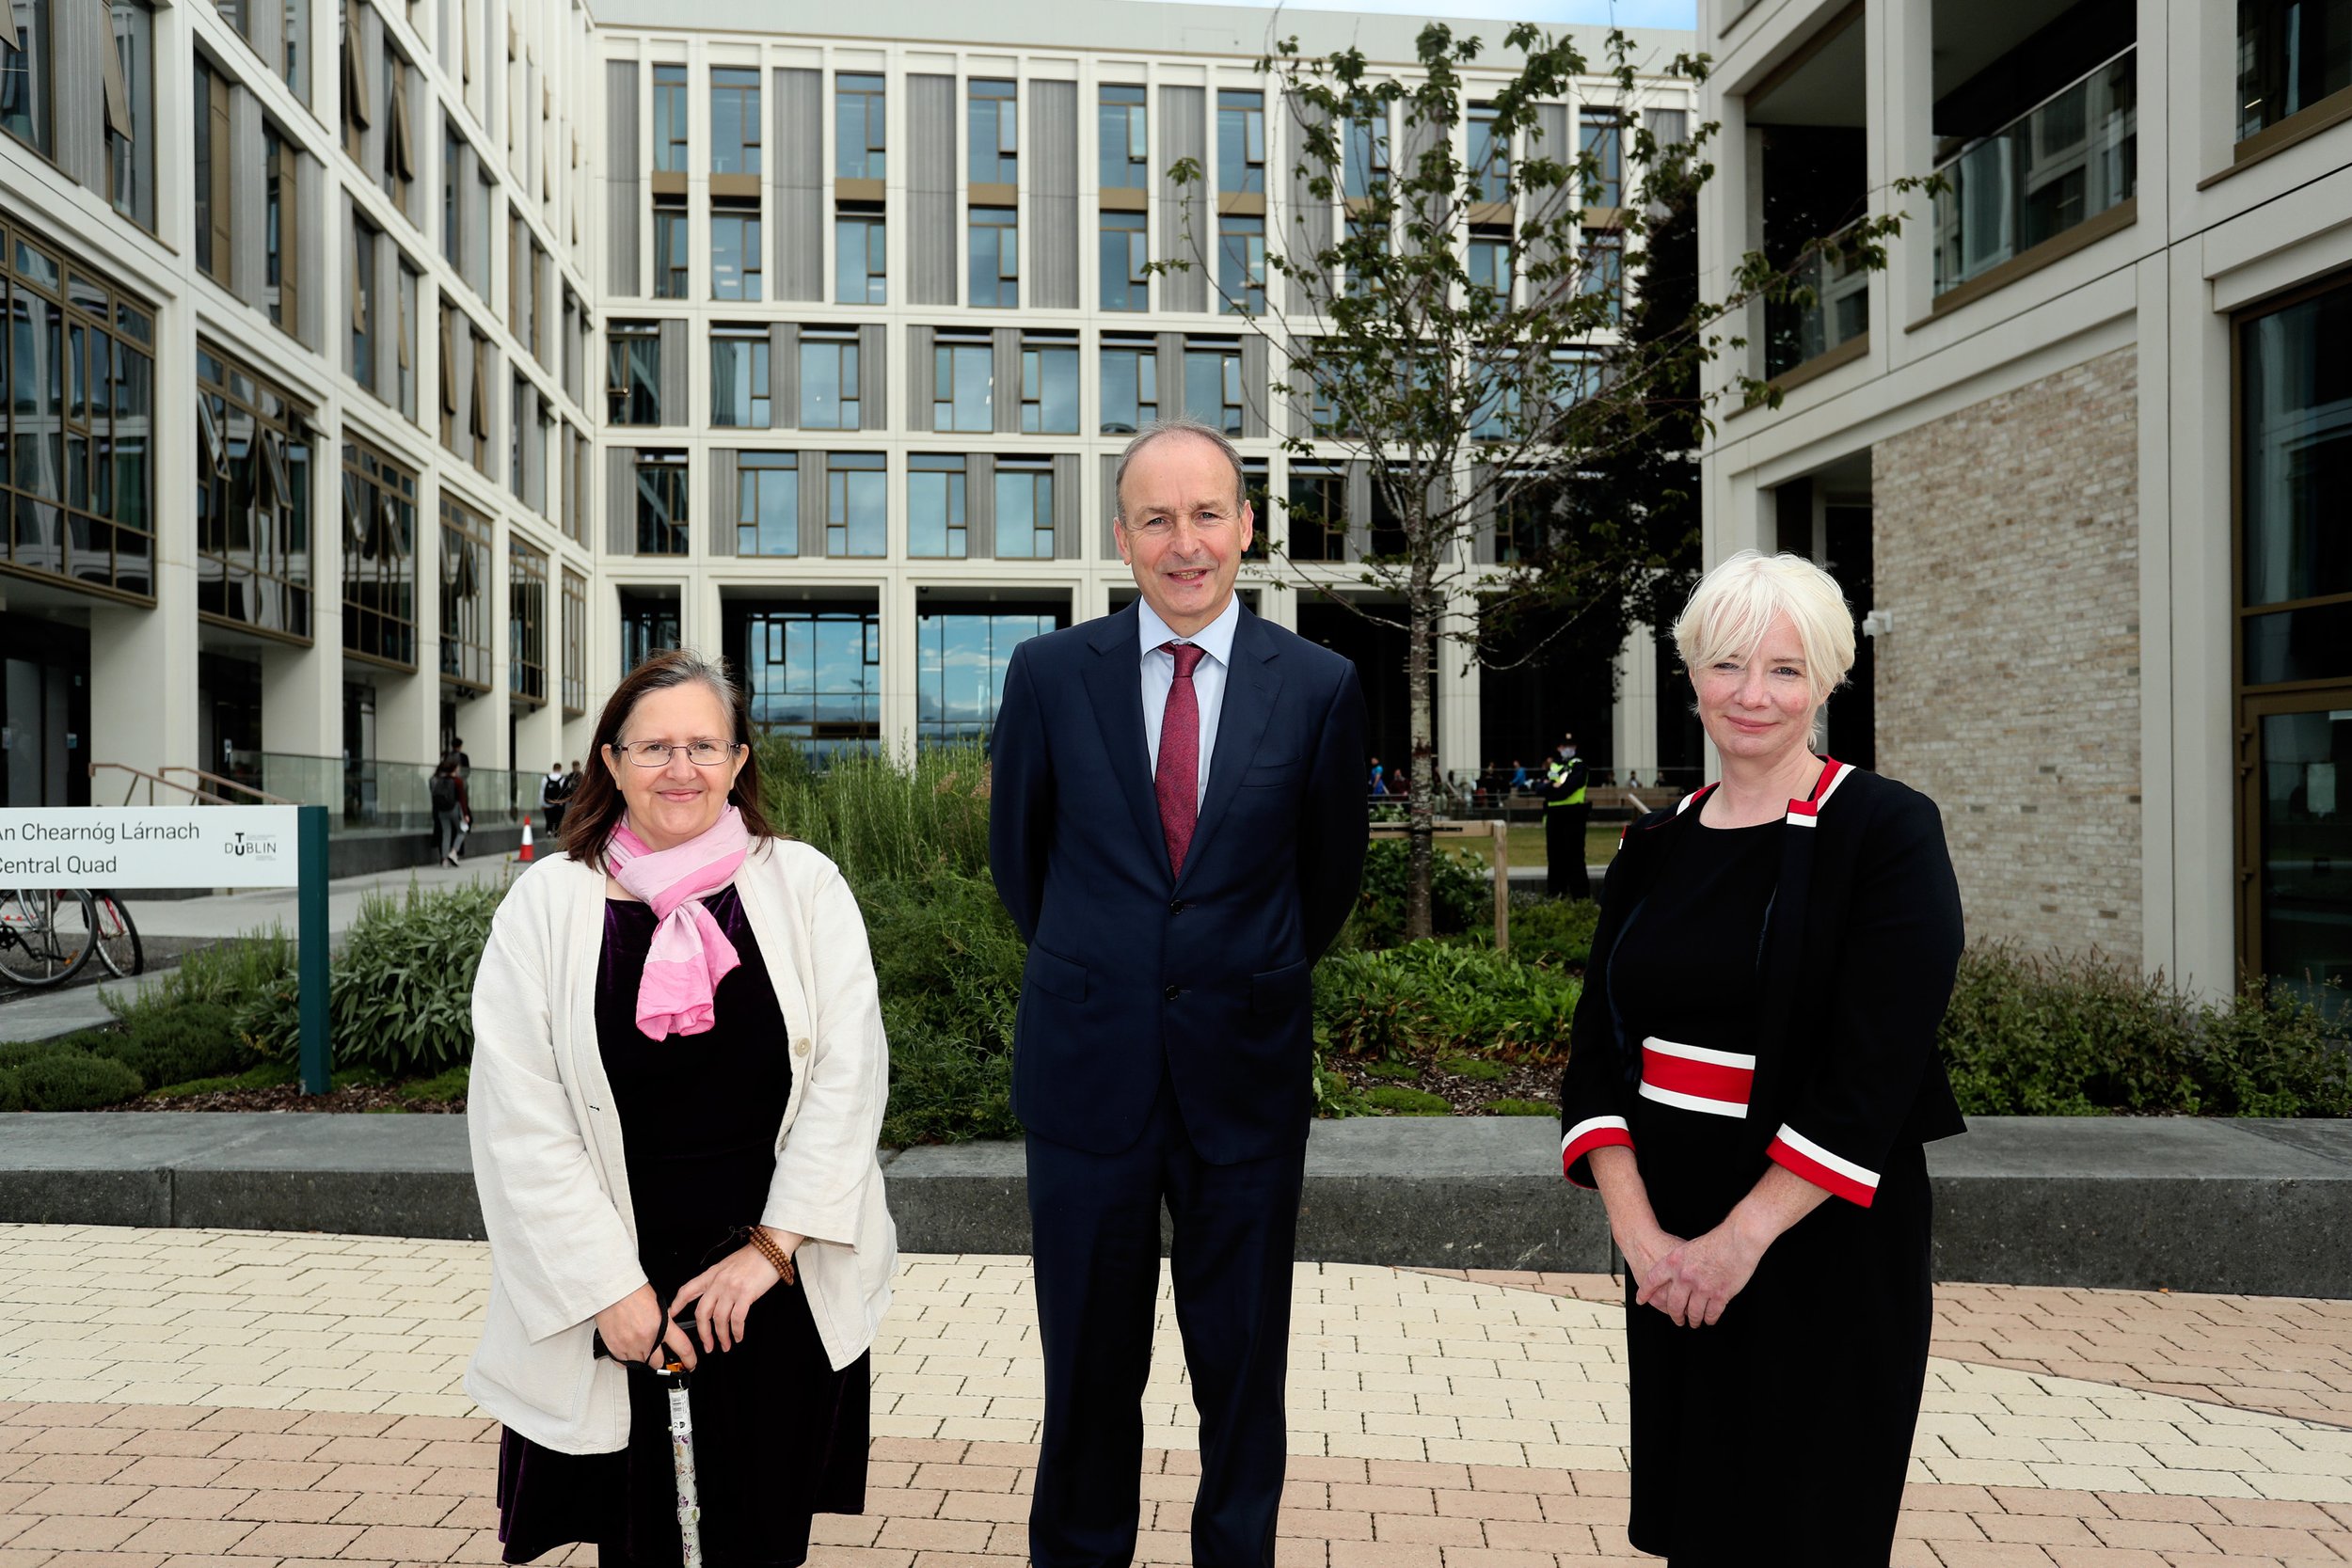  From left to right: Prof. Suzi Jarvis, Convene Lead – UCD Innovation Academy, Taoiseach Micheál Martin, and Dr. Deirdre Lillis, Convene Lead – TU Dublin. 